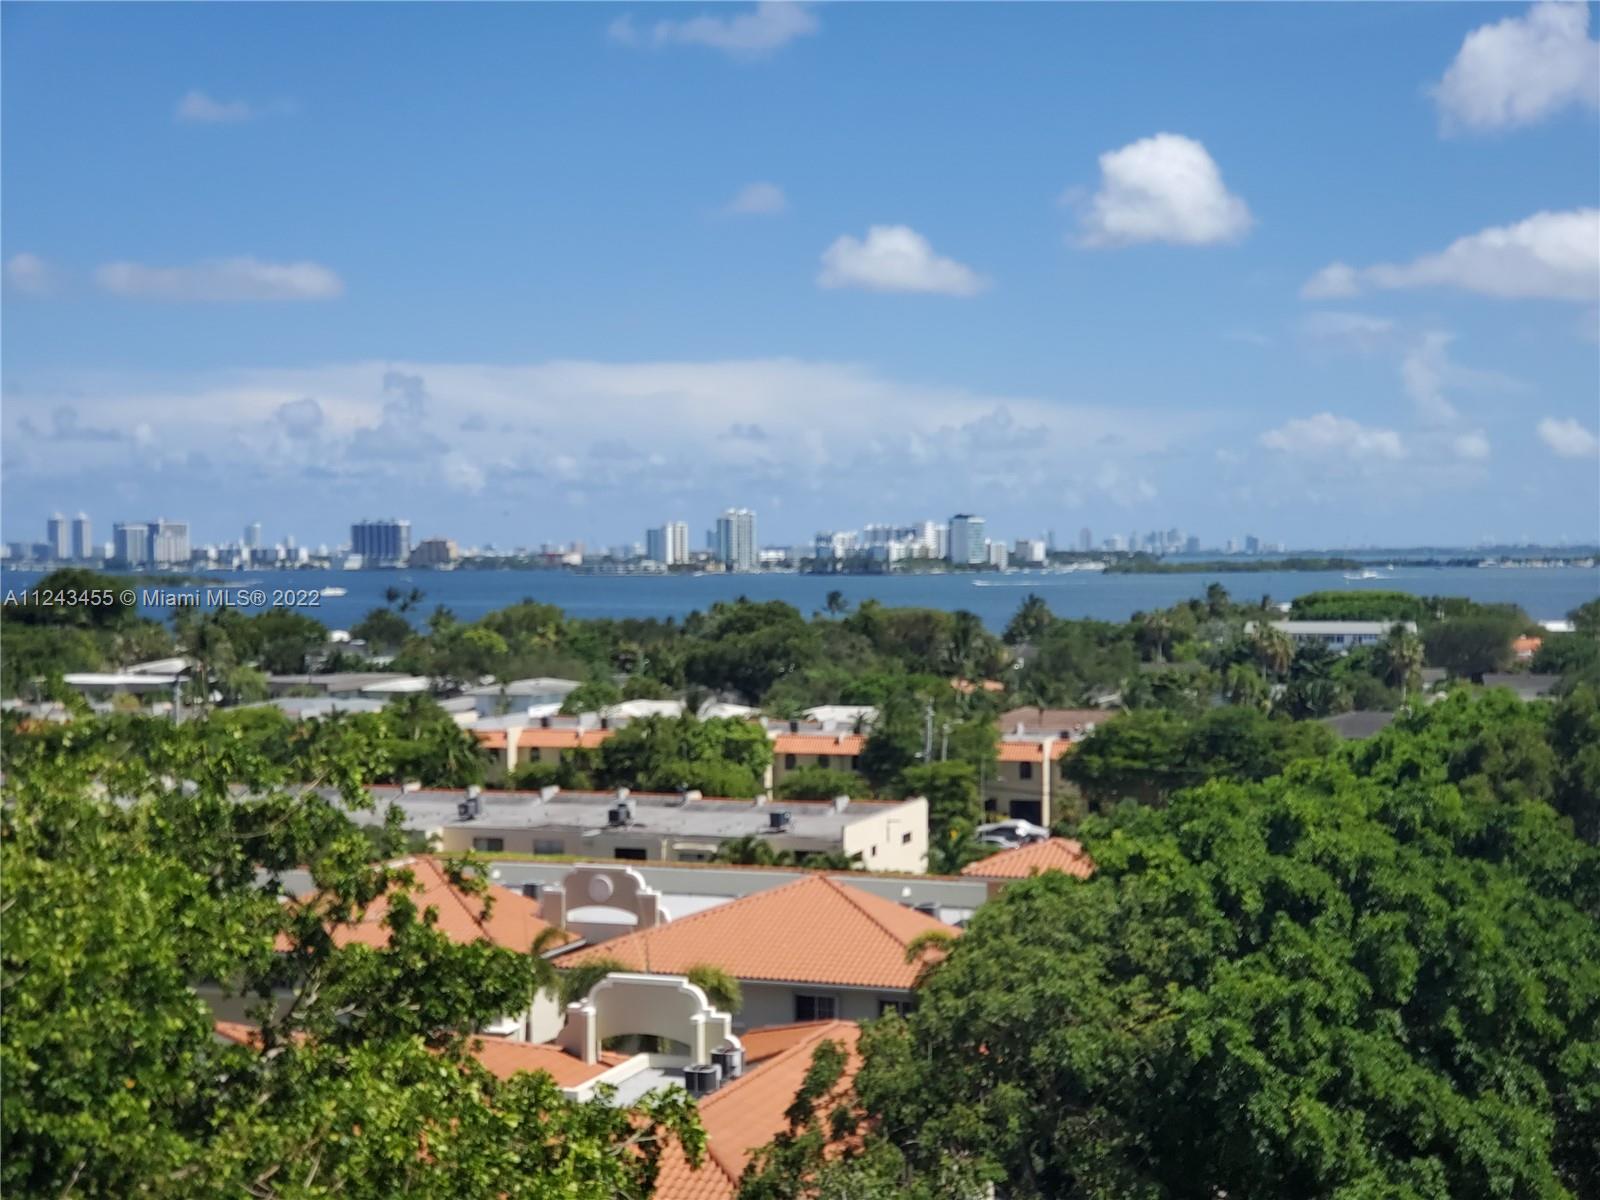 View Intercoastal, Miami Skyline